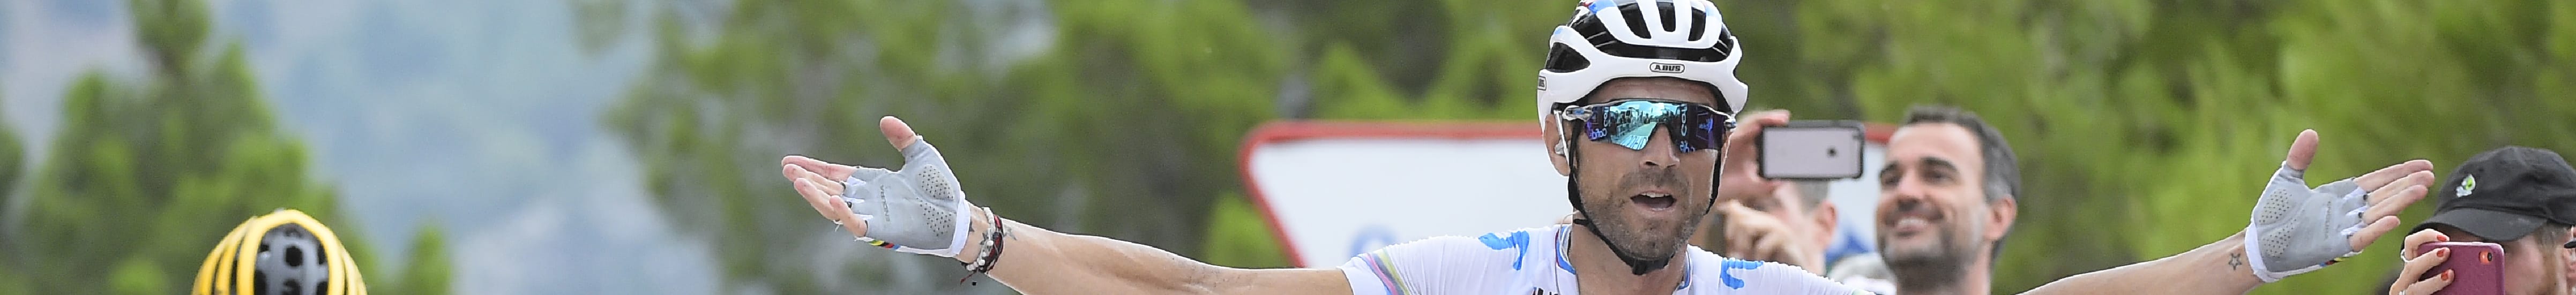 Vuelta 2019, tappa 16: Valverde ci crede, riscatto di Lopez Moreno?